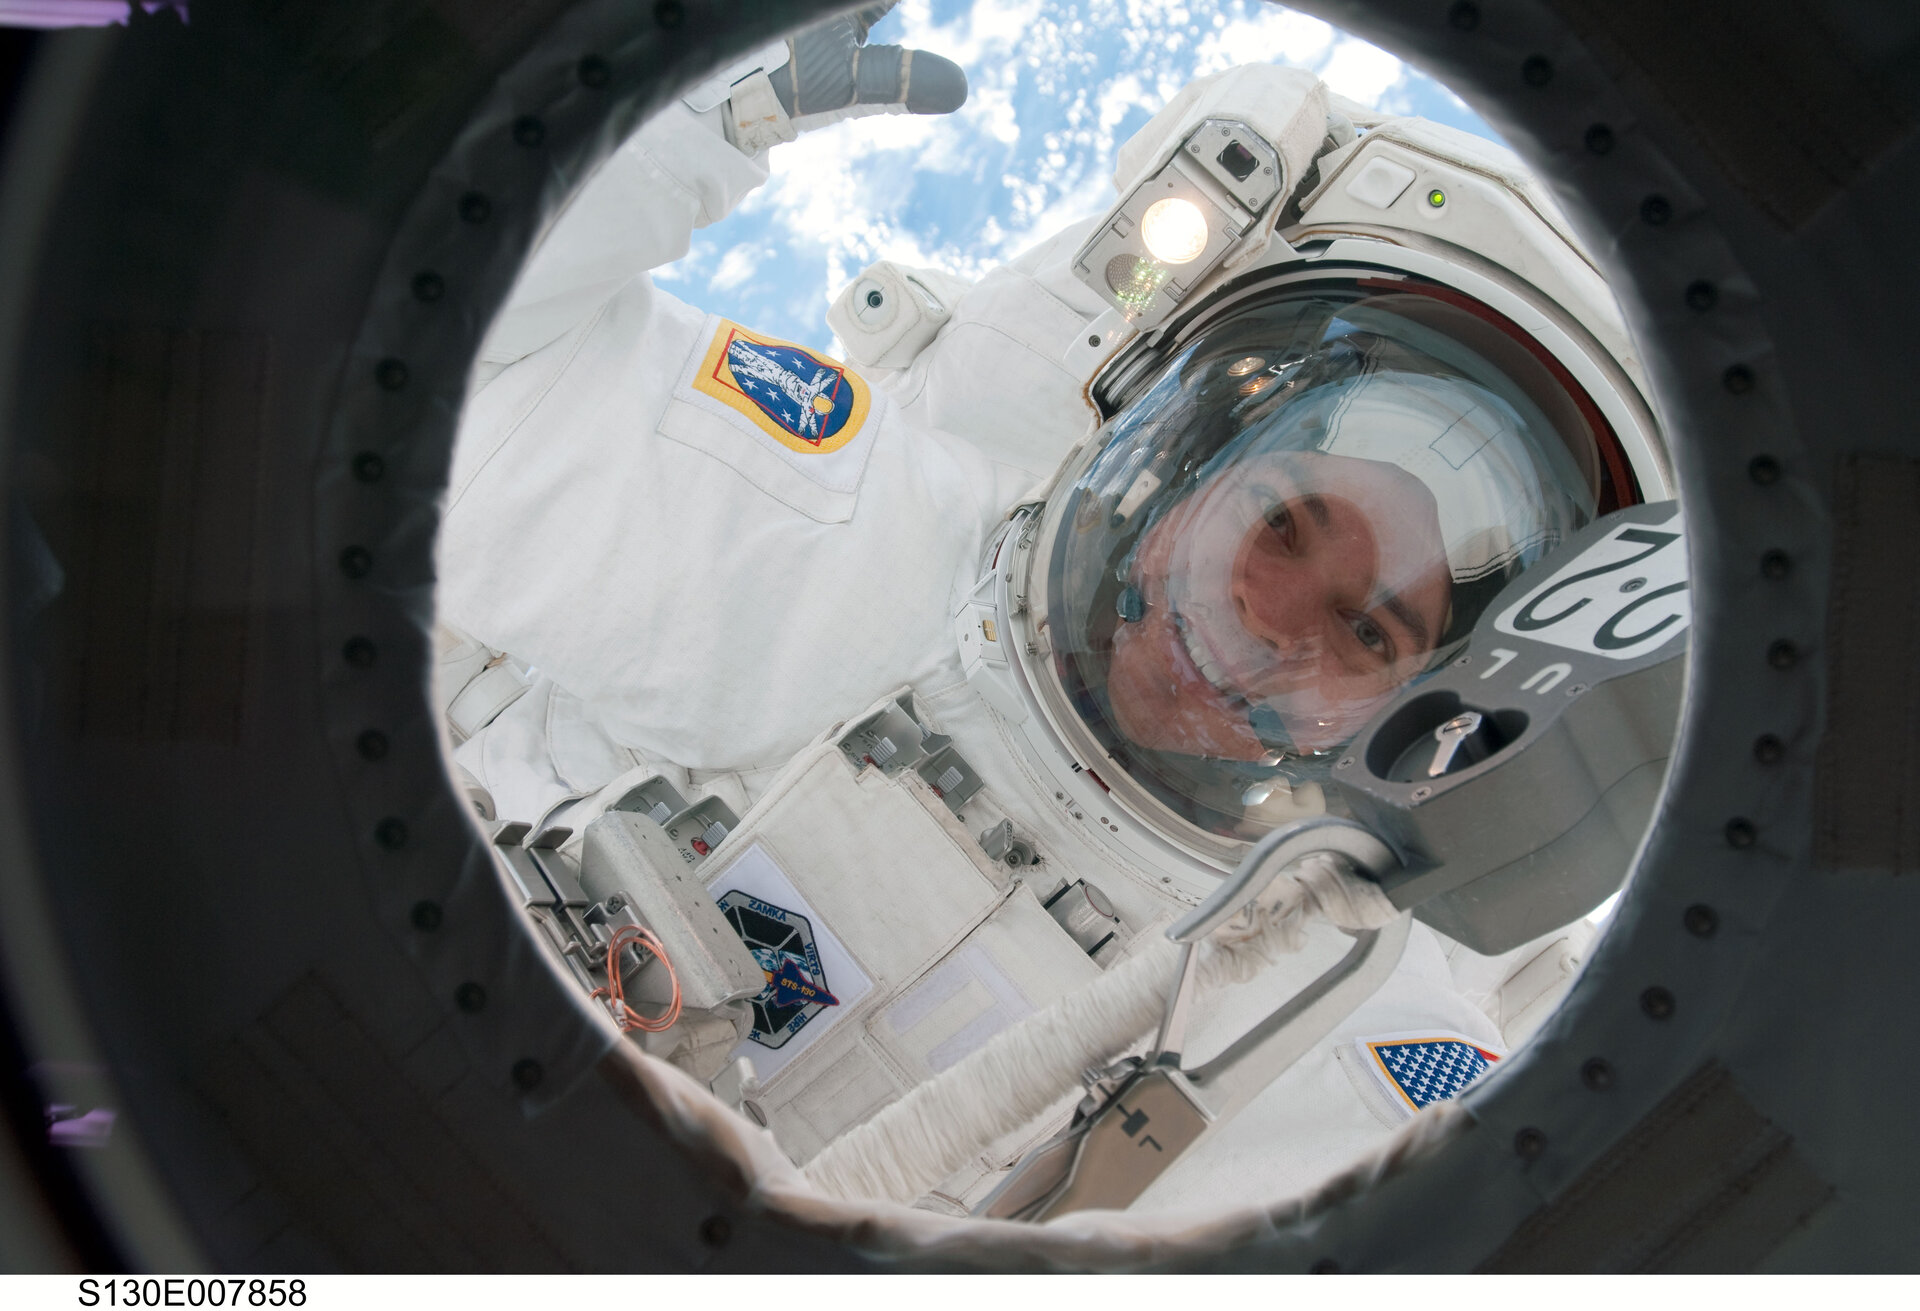 Astronaut Robert Behnken during the EVA 2